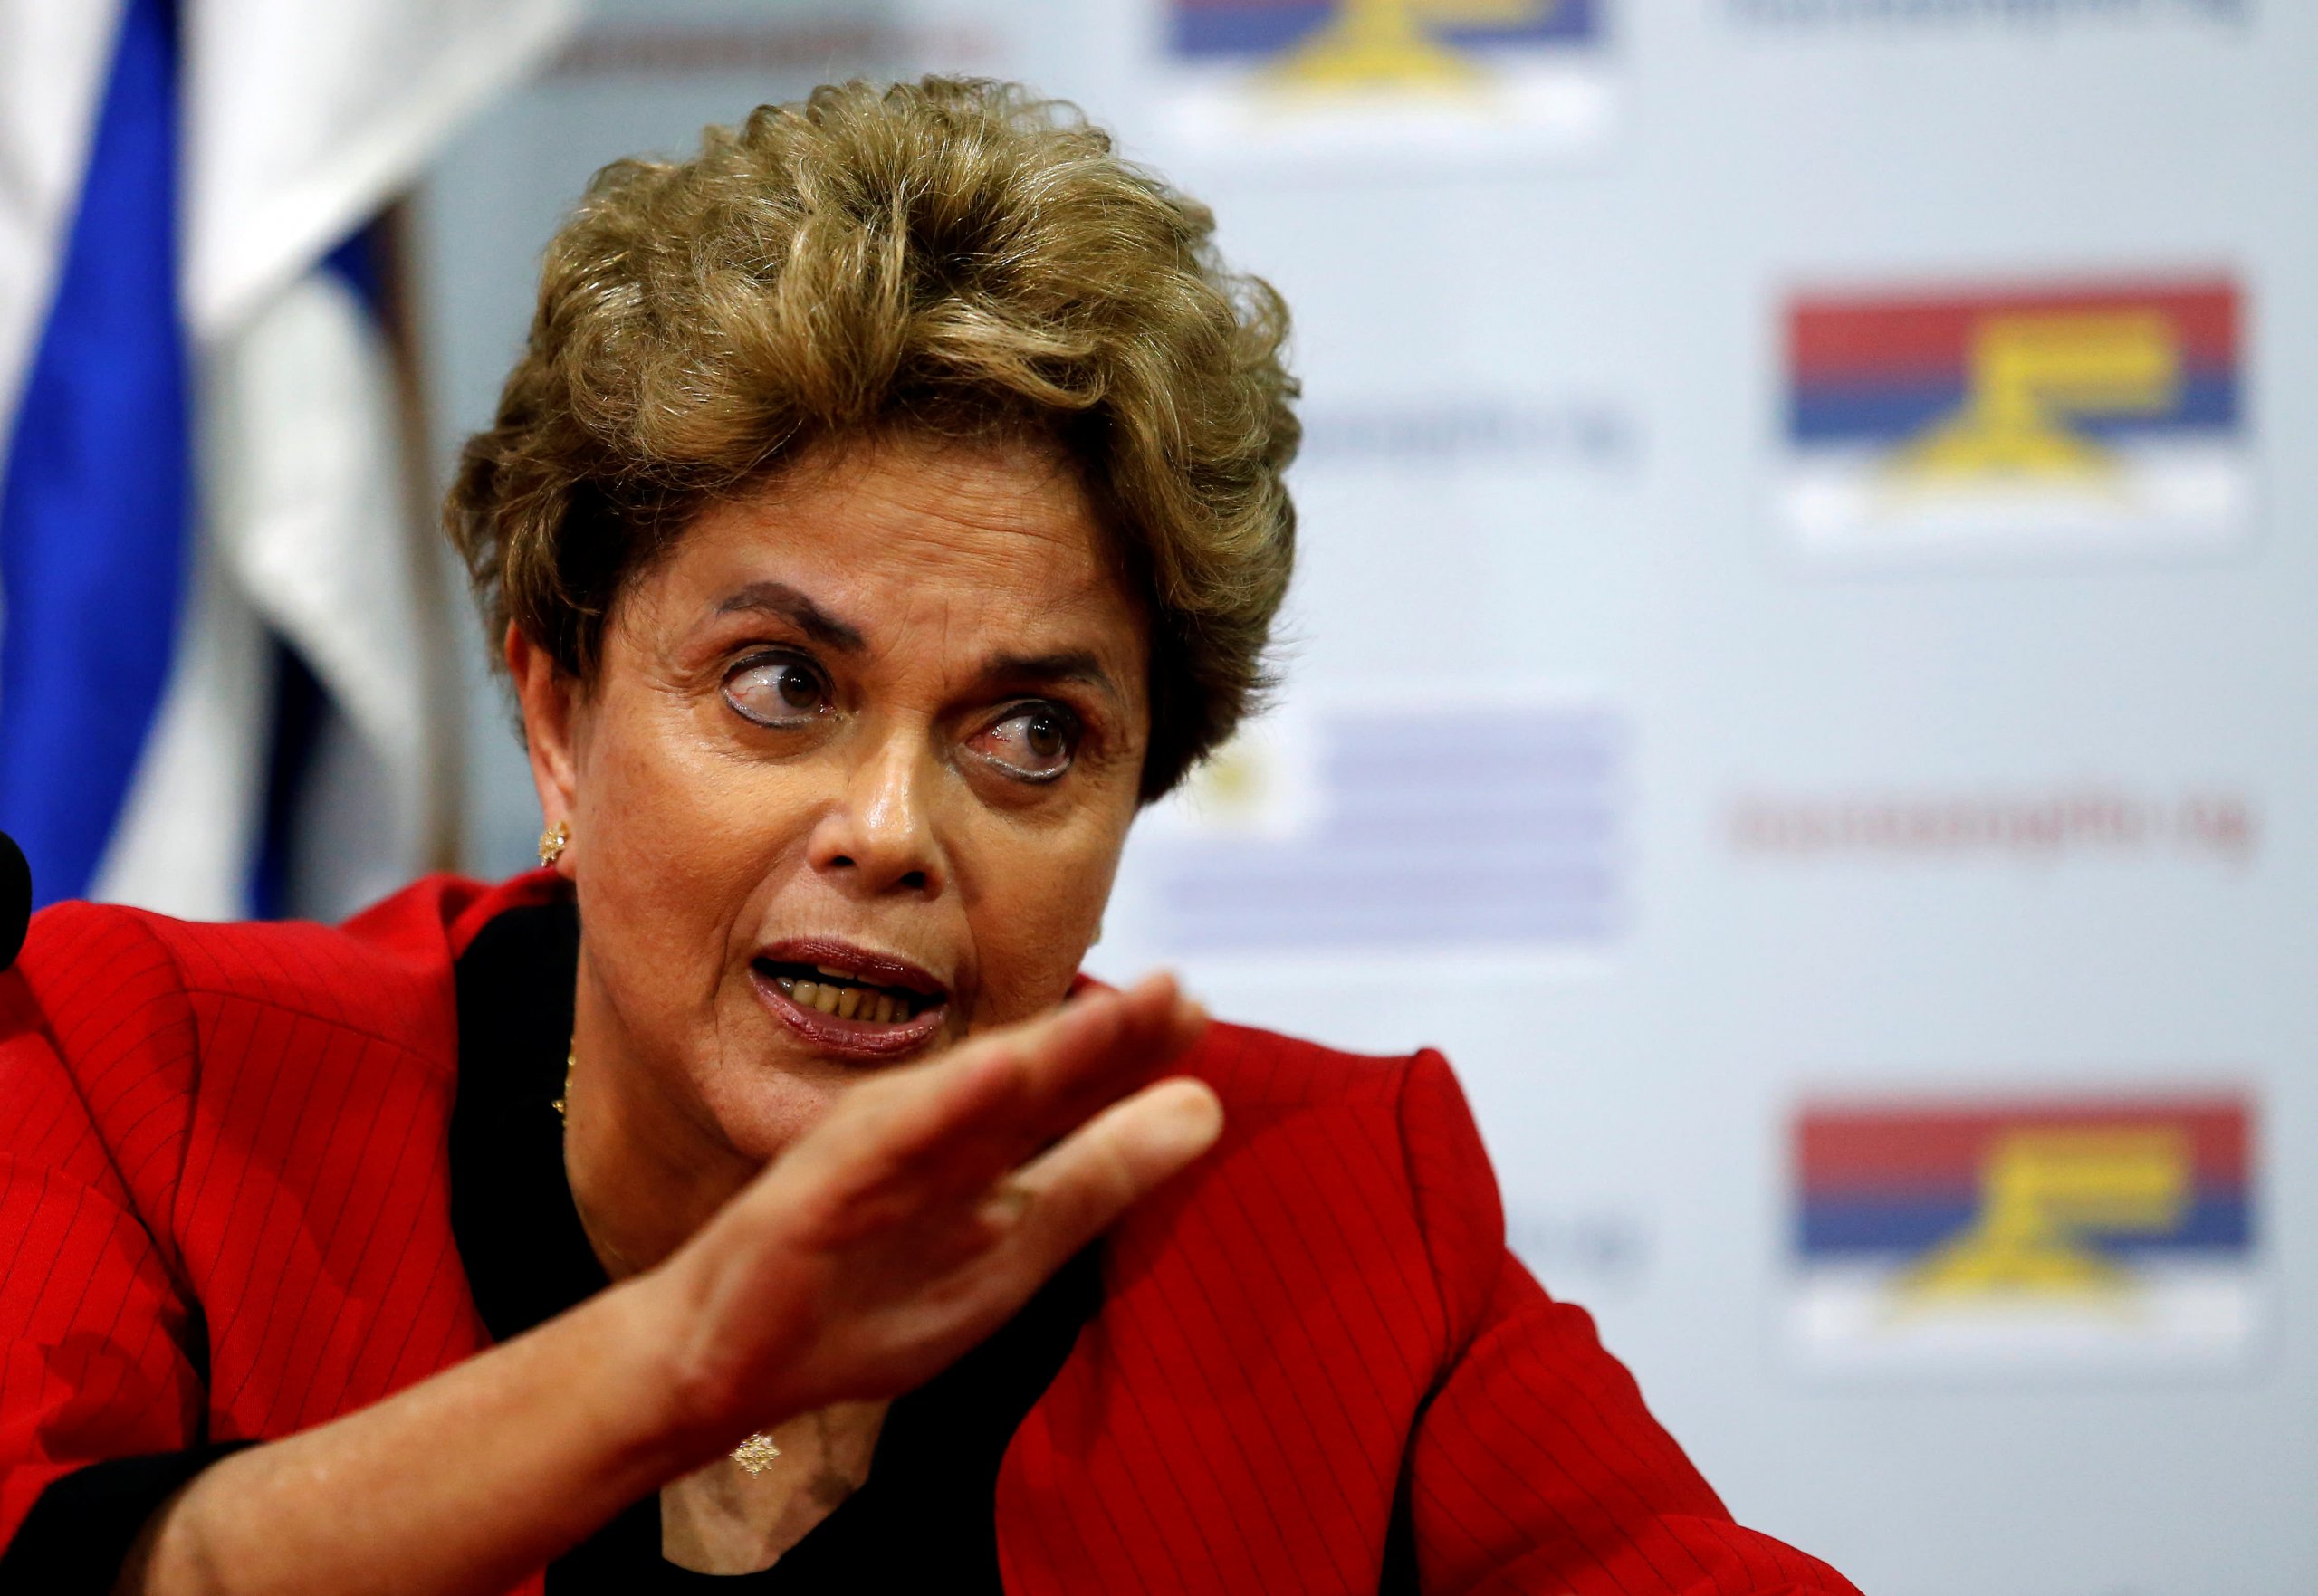 Dilma Rousseff former President of Brazil